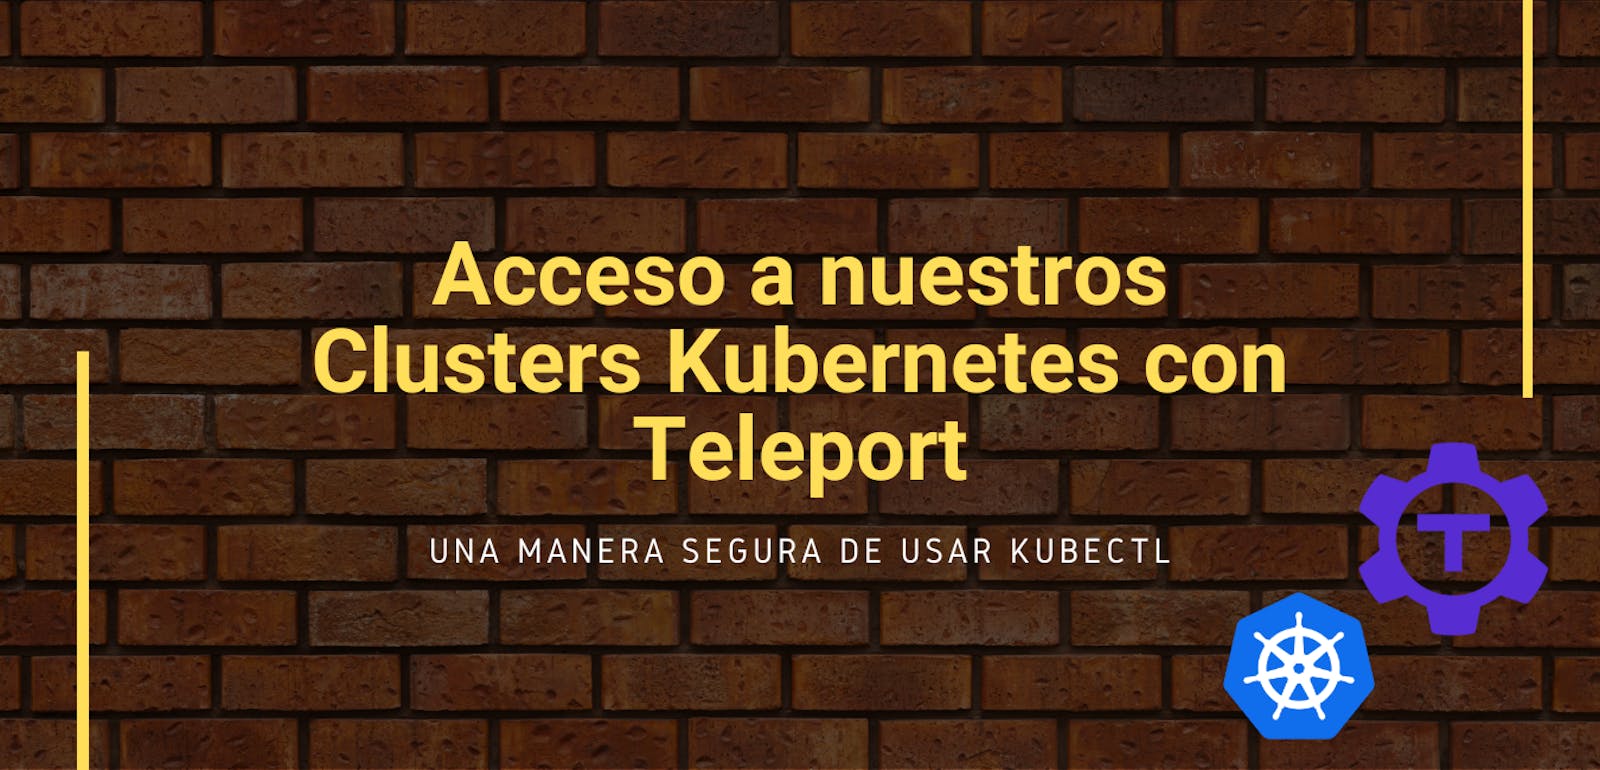 Asegurando el acceso a nuestros Clusters Kubernetes con Teleport